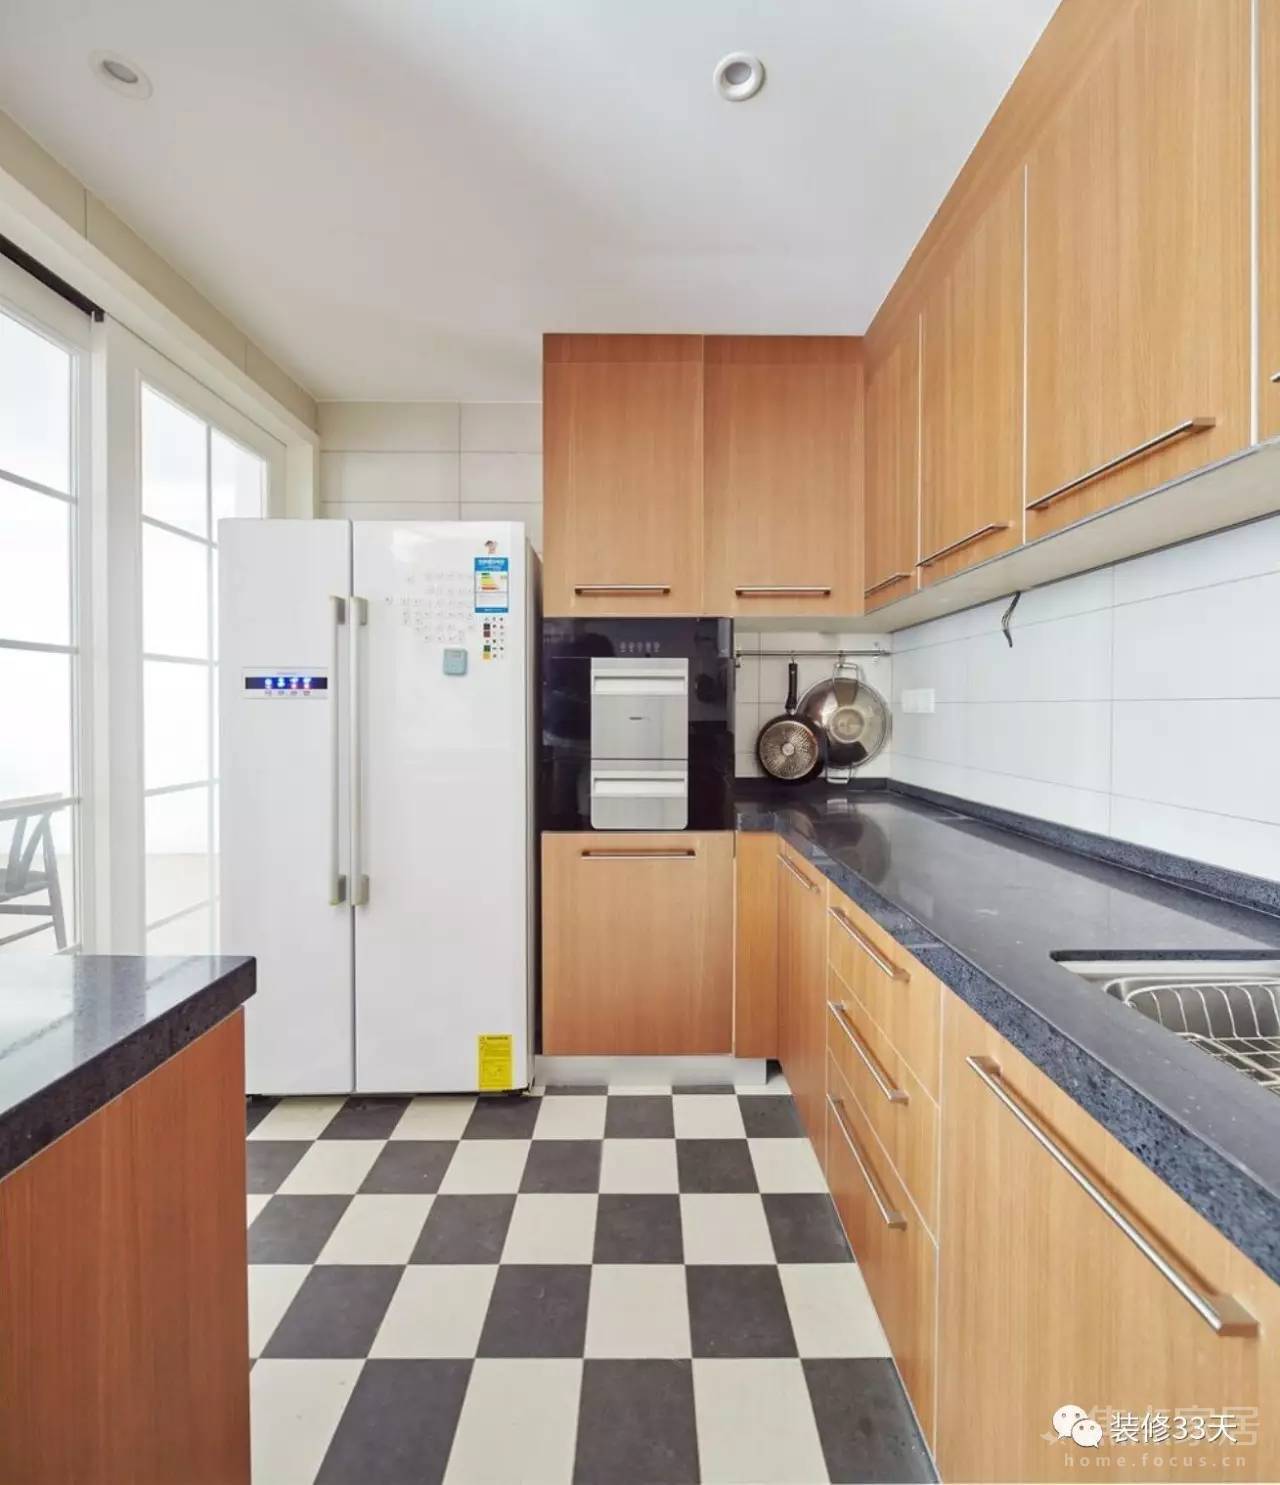 如果冰箱在厨房的话一般就会考虑橱柜设计整体化